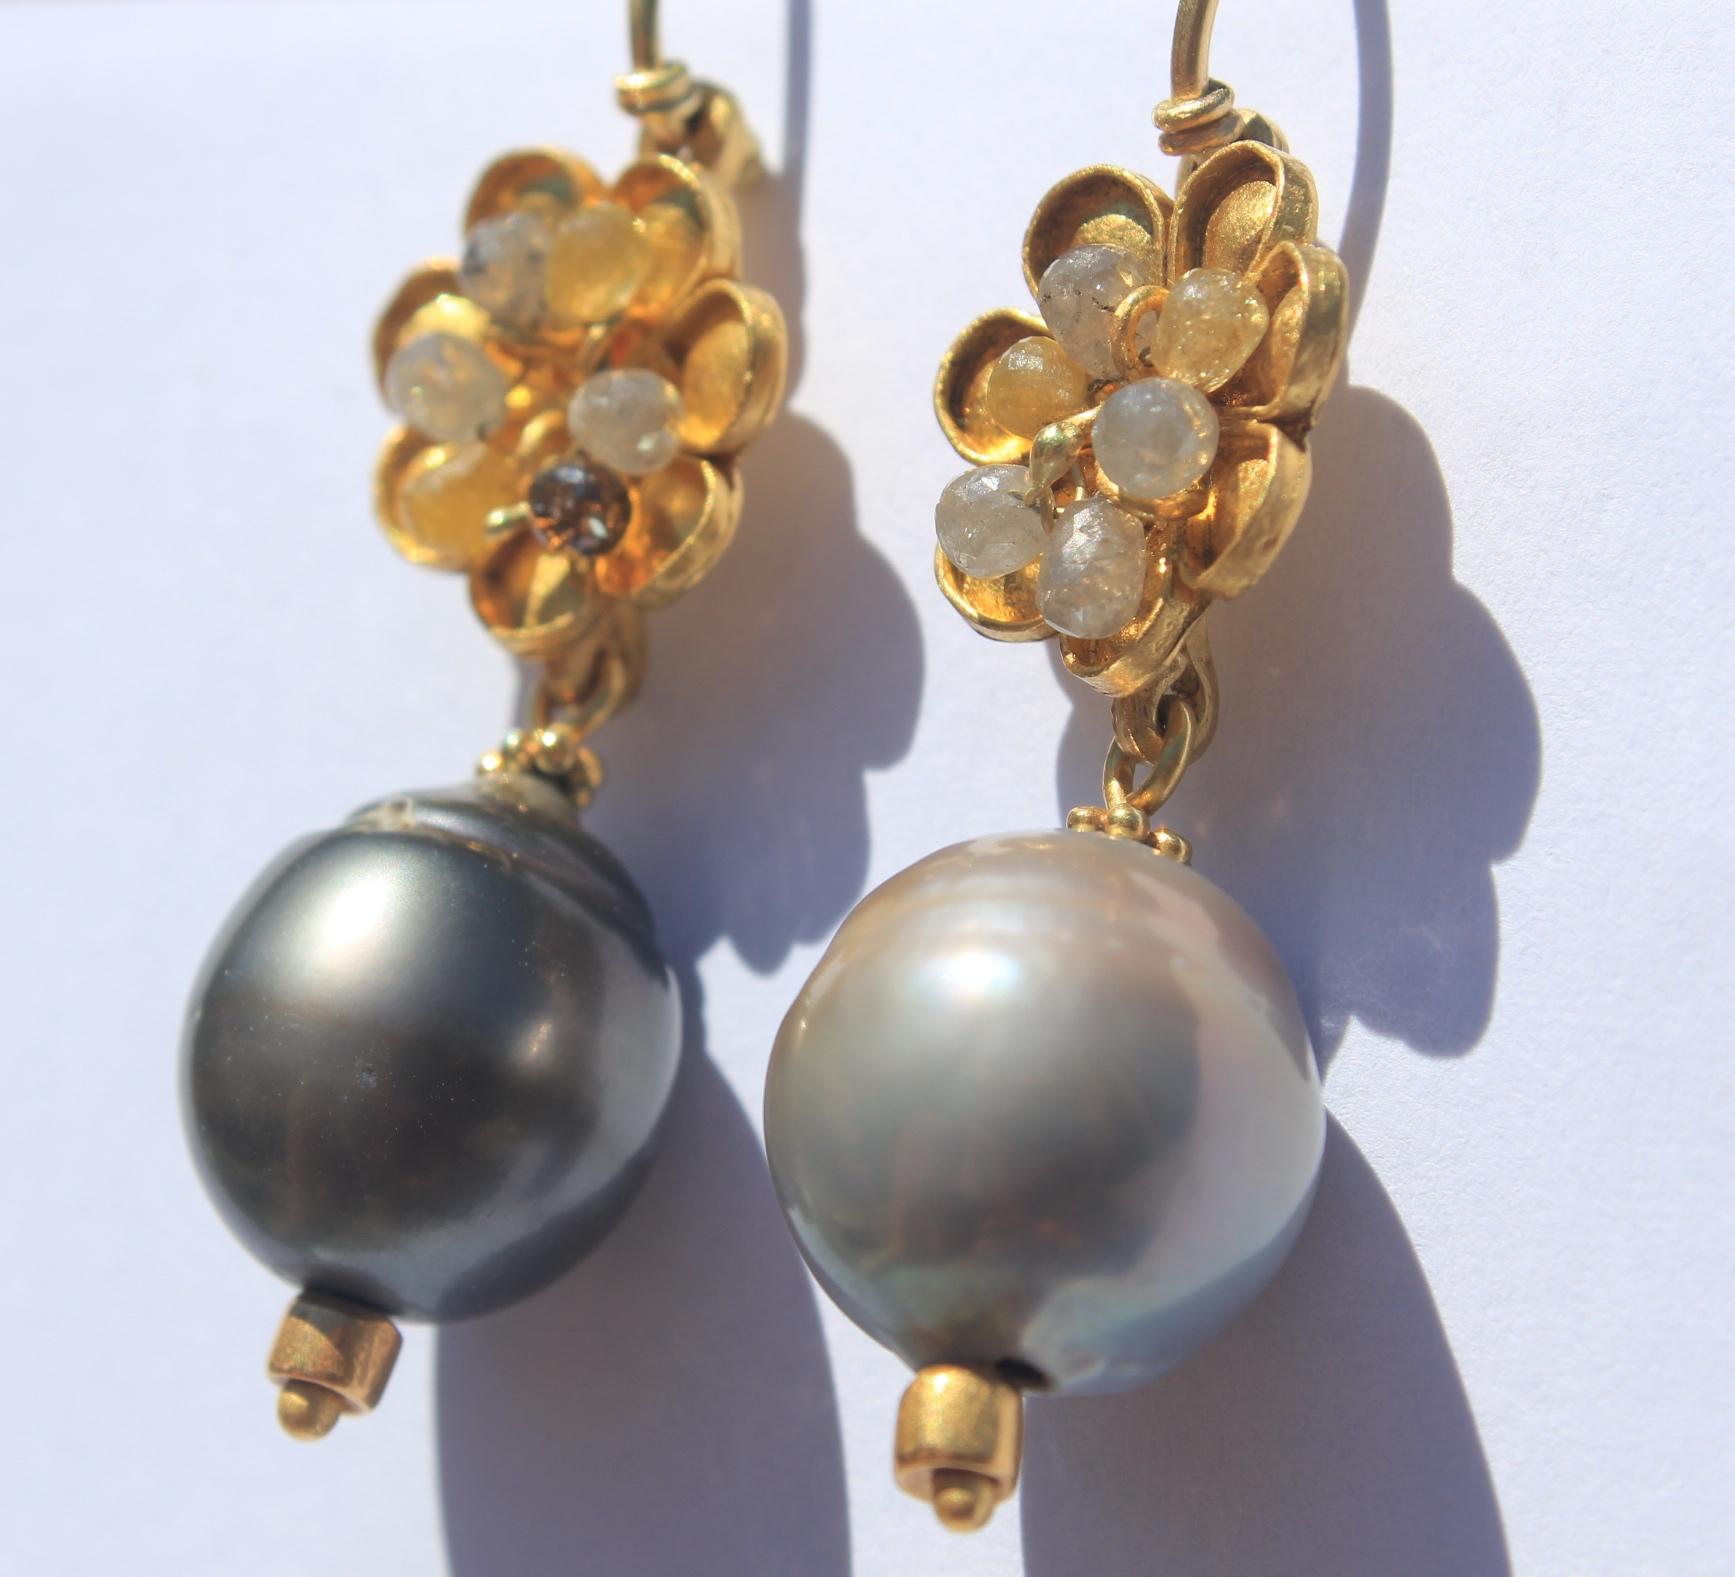 Benutzerdefinierte Bestellung. Graue Garten-Tropfen-Ohrringe. Diese eleganten, modernen Ohrringe aus 22-karätigem Gold mit Tahiti-Perlen und Diamanten sehen jeden Tag gut aus. Außerdem werten sie jedes Outfit für einen besonderen Anlass auf.

Diese